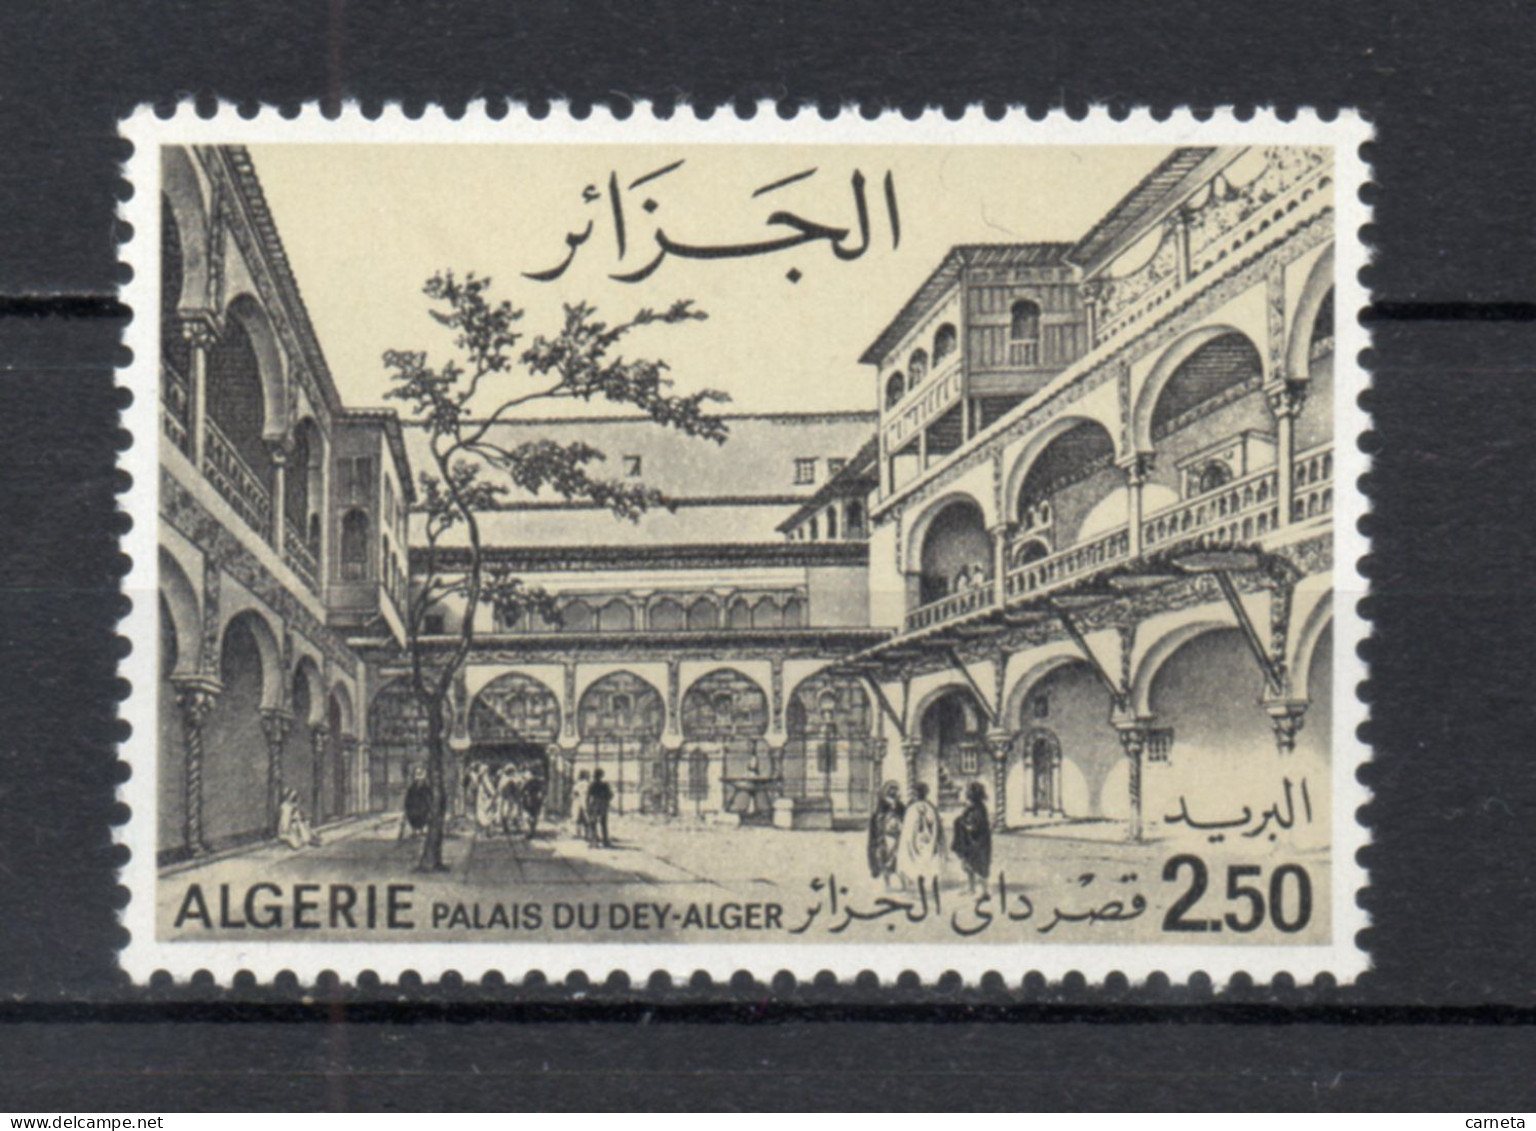 ALGERIE N° 633   NEUF SANS CHARNIERE COTE 4.00€  MONUMENT PALAIS - Algerien (1962-...)